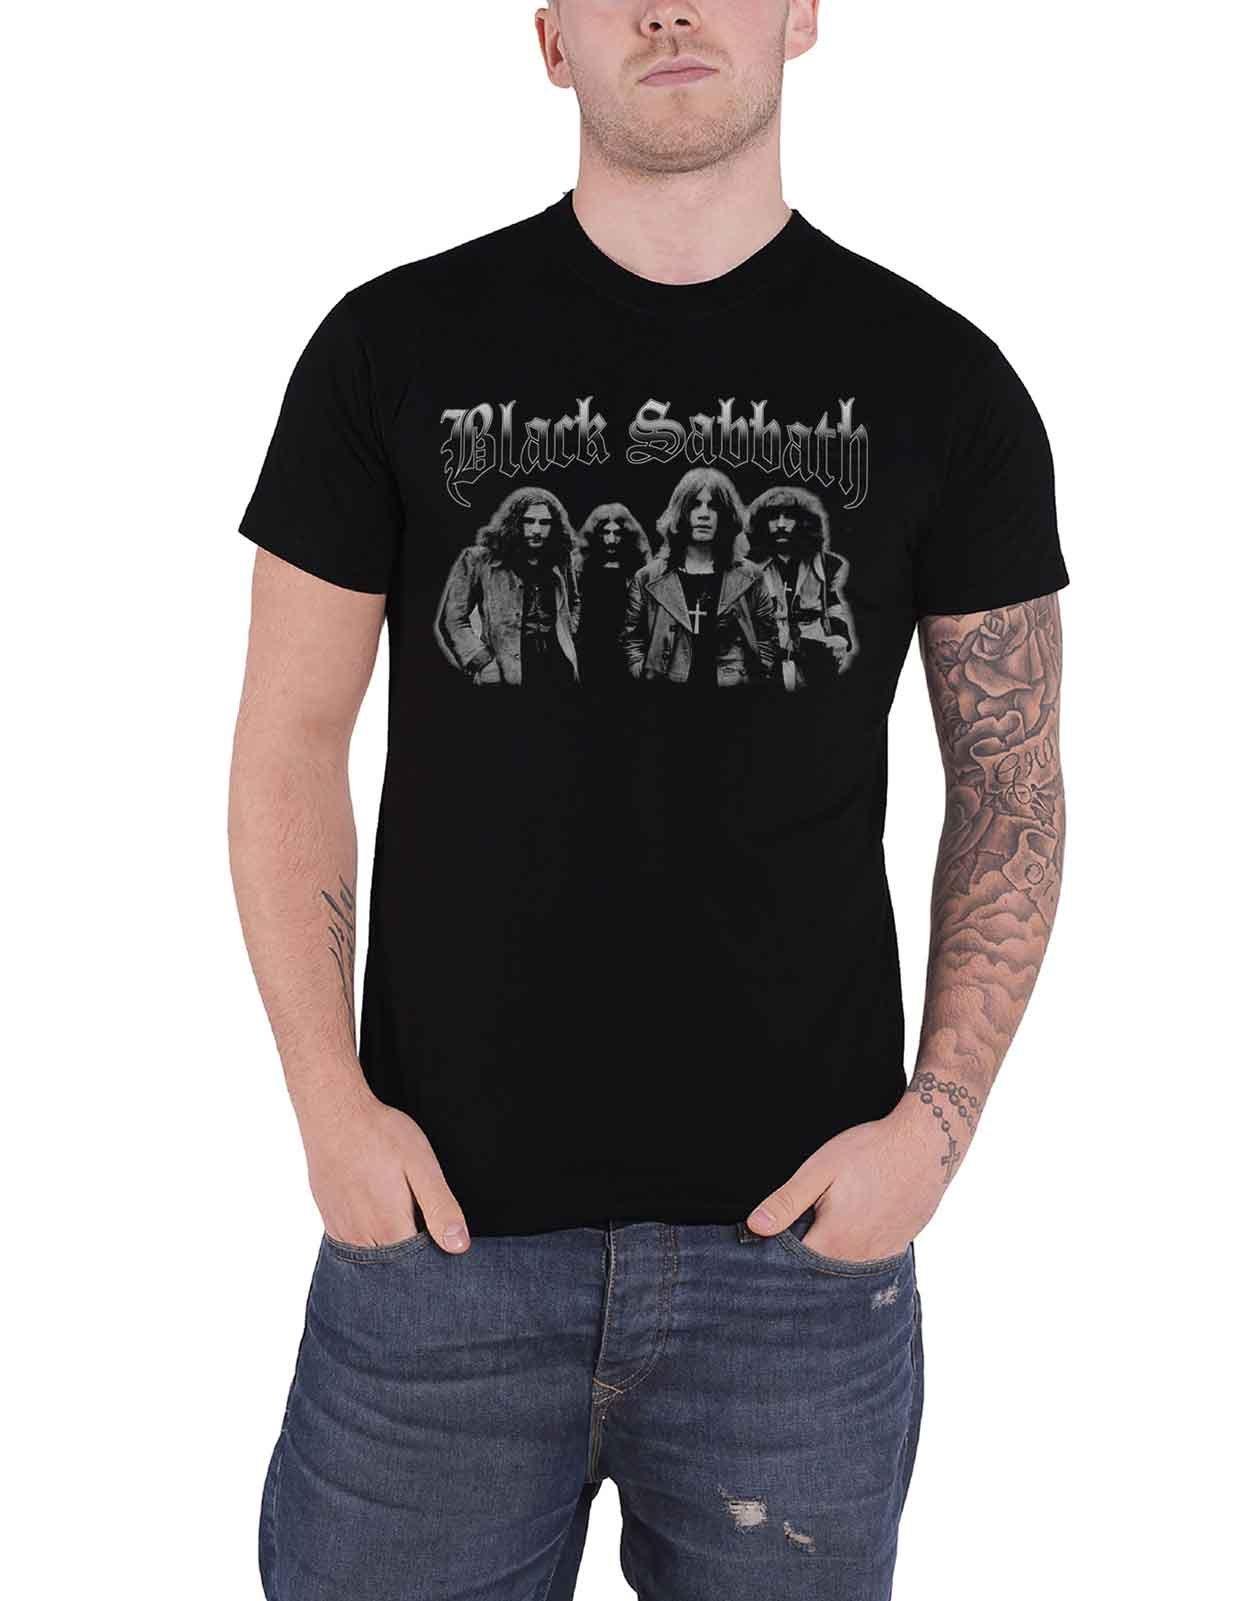 Серая футболка с групповым снимком Black Sabbath, черный